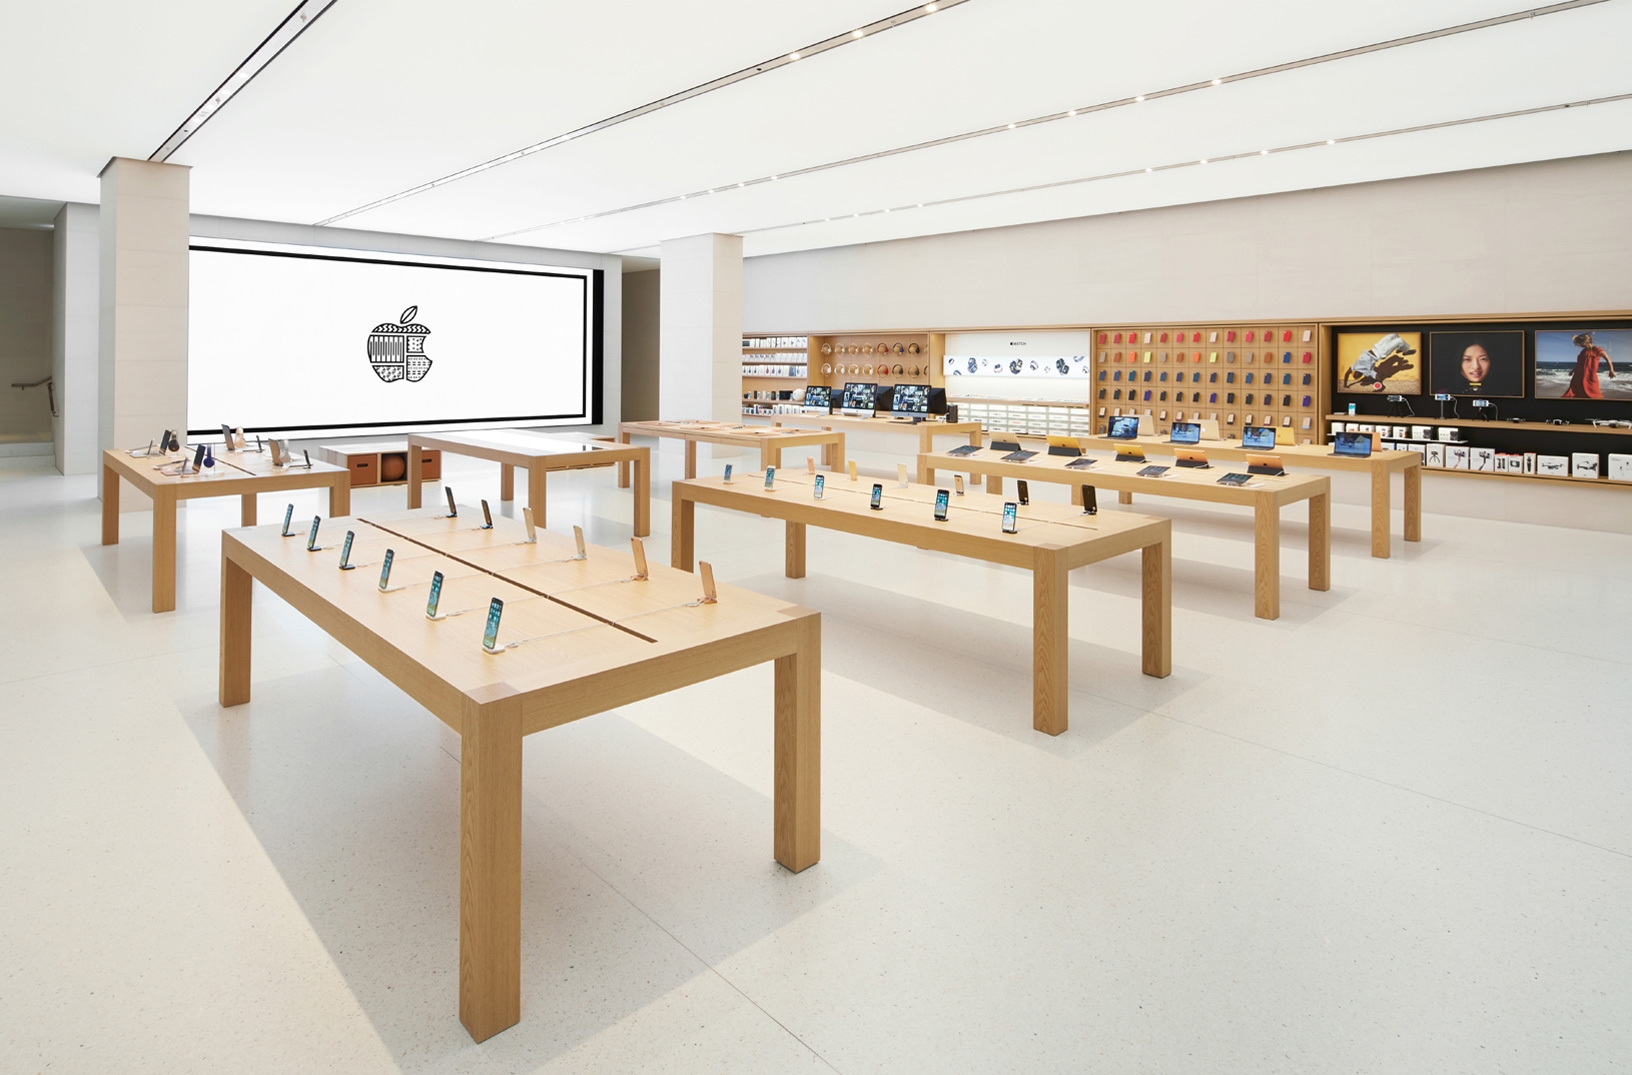 Ein Anblick, an den man sich wegen Corona gewöhnen muss: leere Apple Stores rund um den Erdball